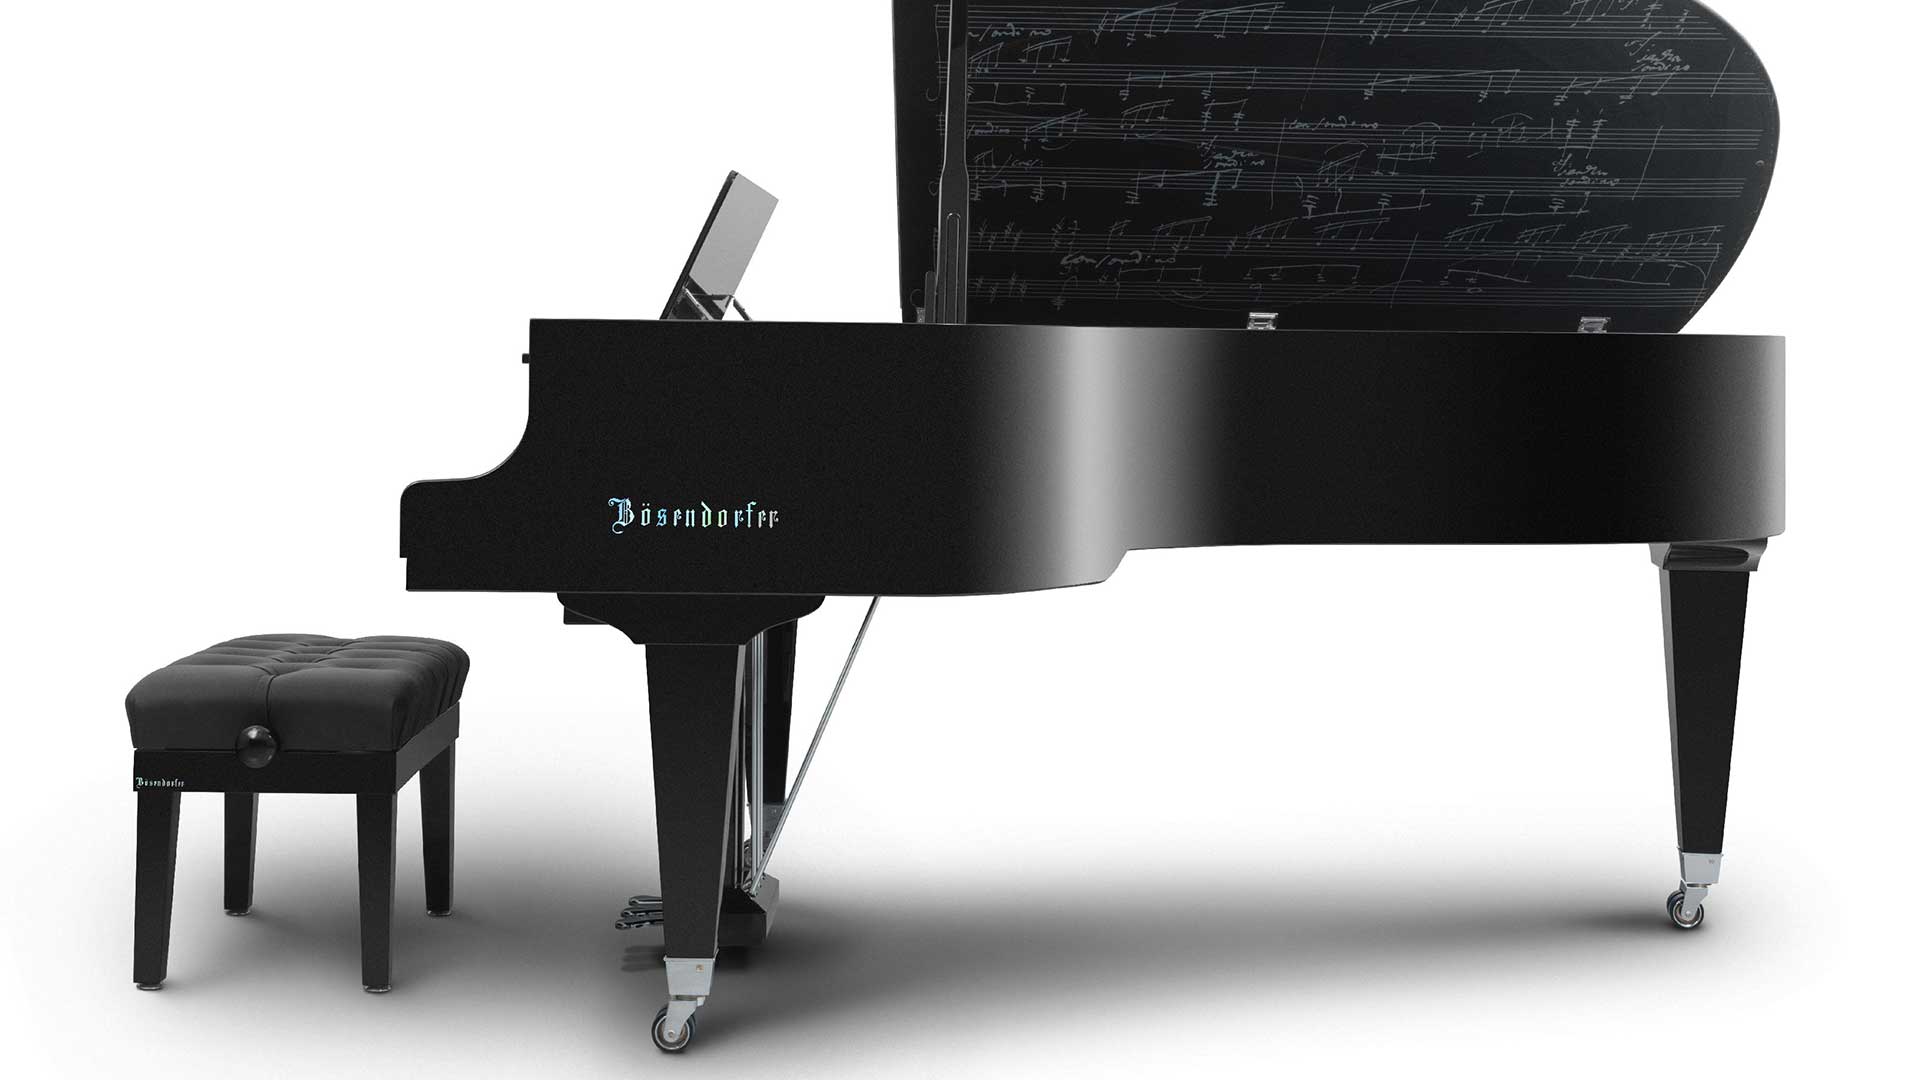 Bosendorfer piano Beethoven 250th grand piano